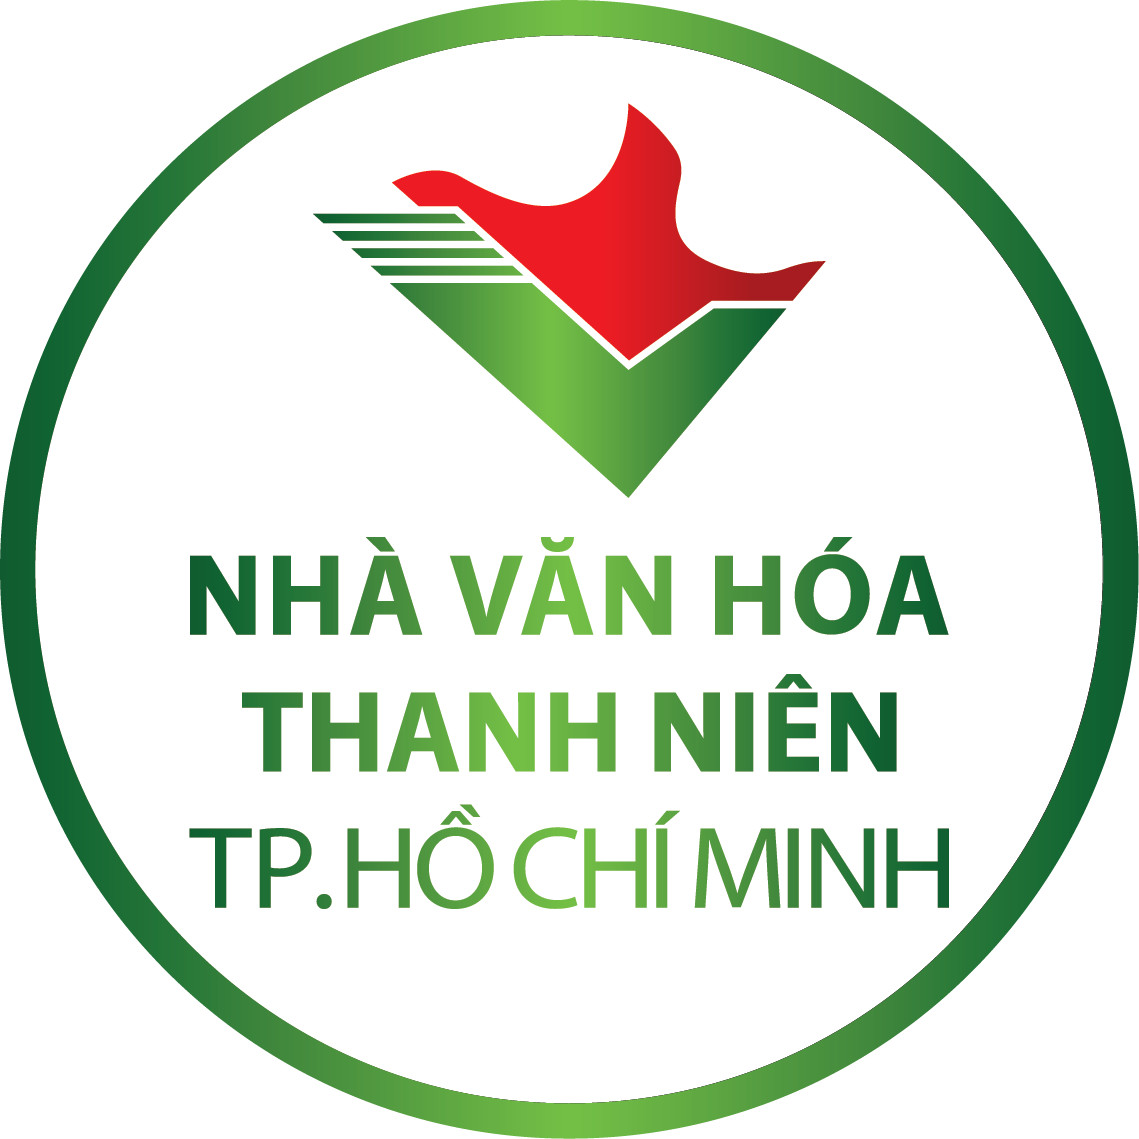 Nhà Văn hoá Thanh niên TP. Hồ Chí Minh